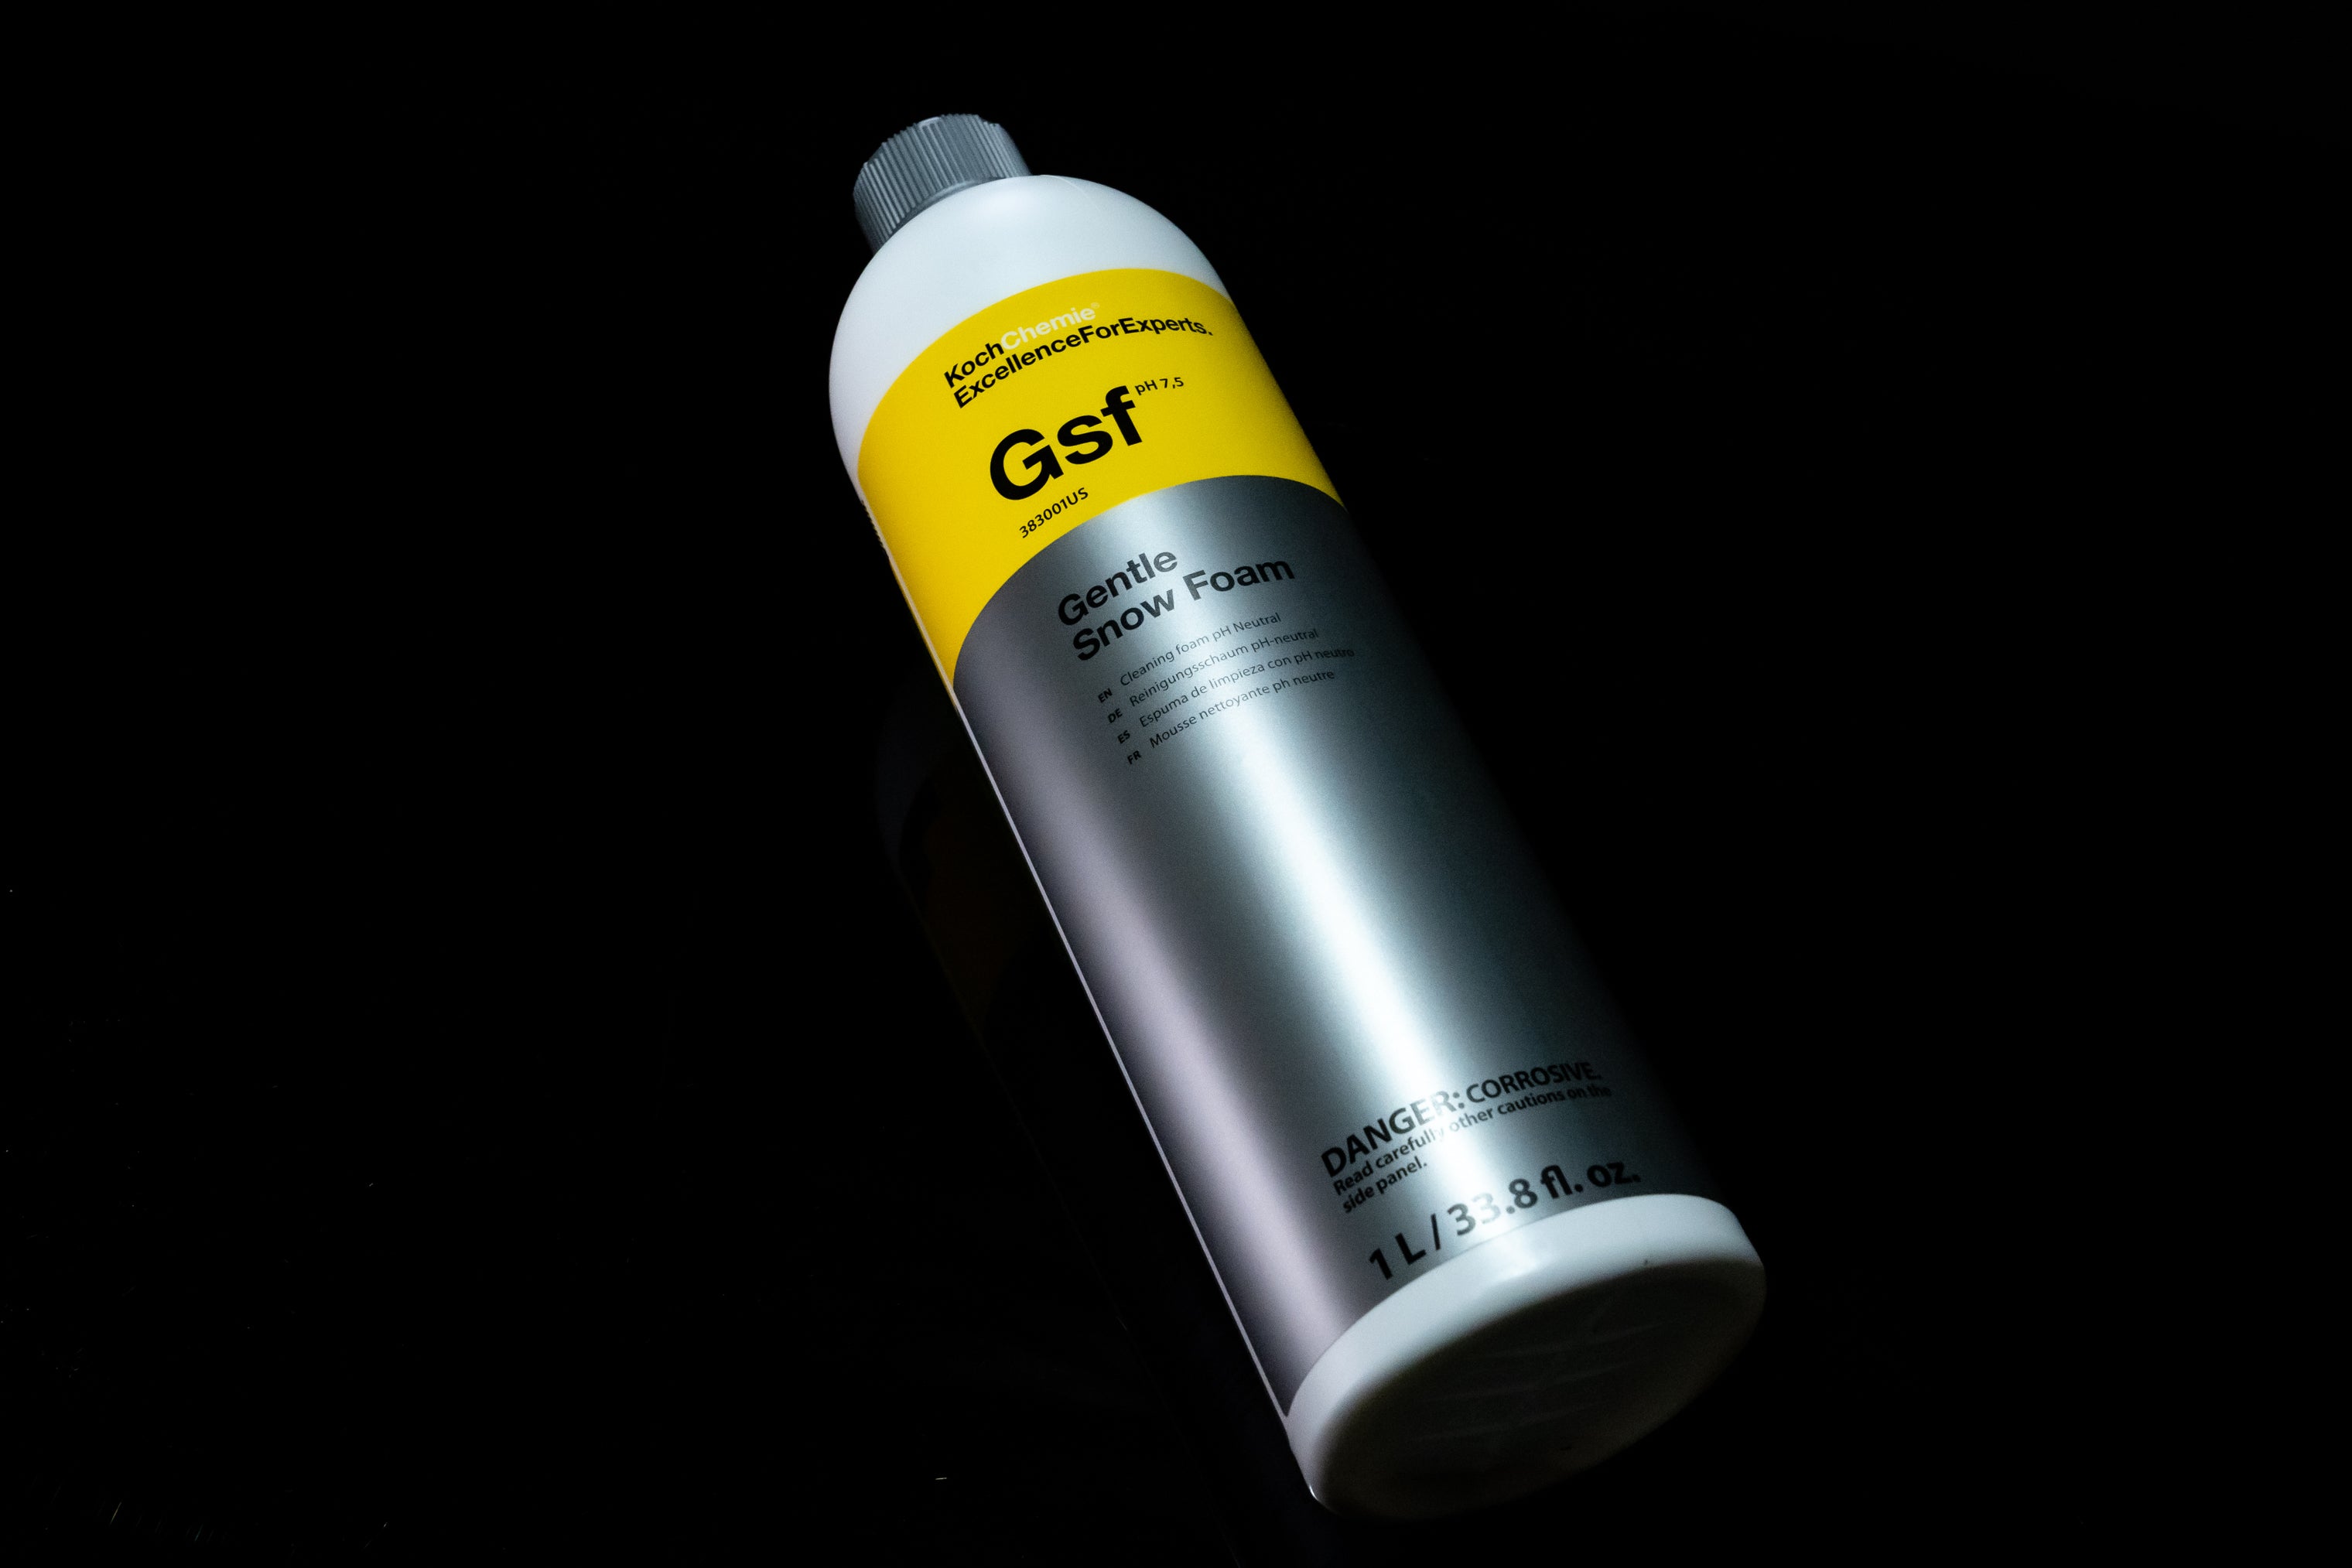 Koch Chemie Gentle Snow Foam  GSF Soap (1L) - iRep Auto Detail Supply